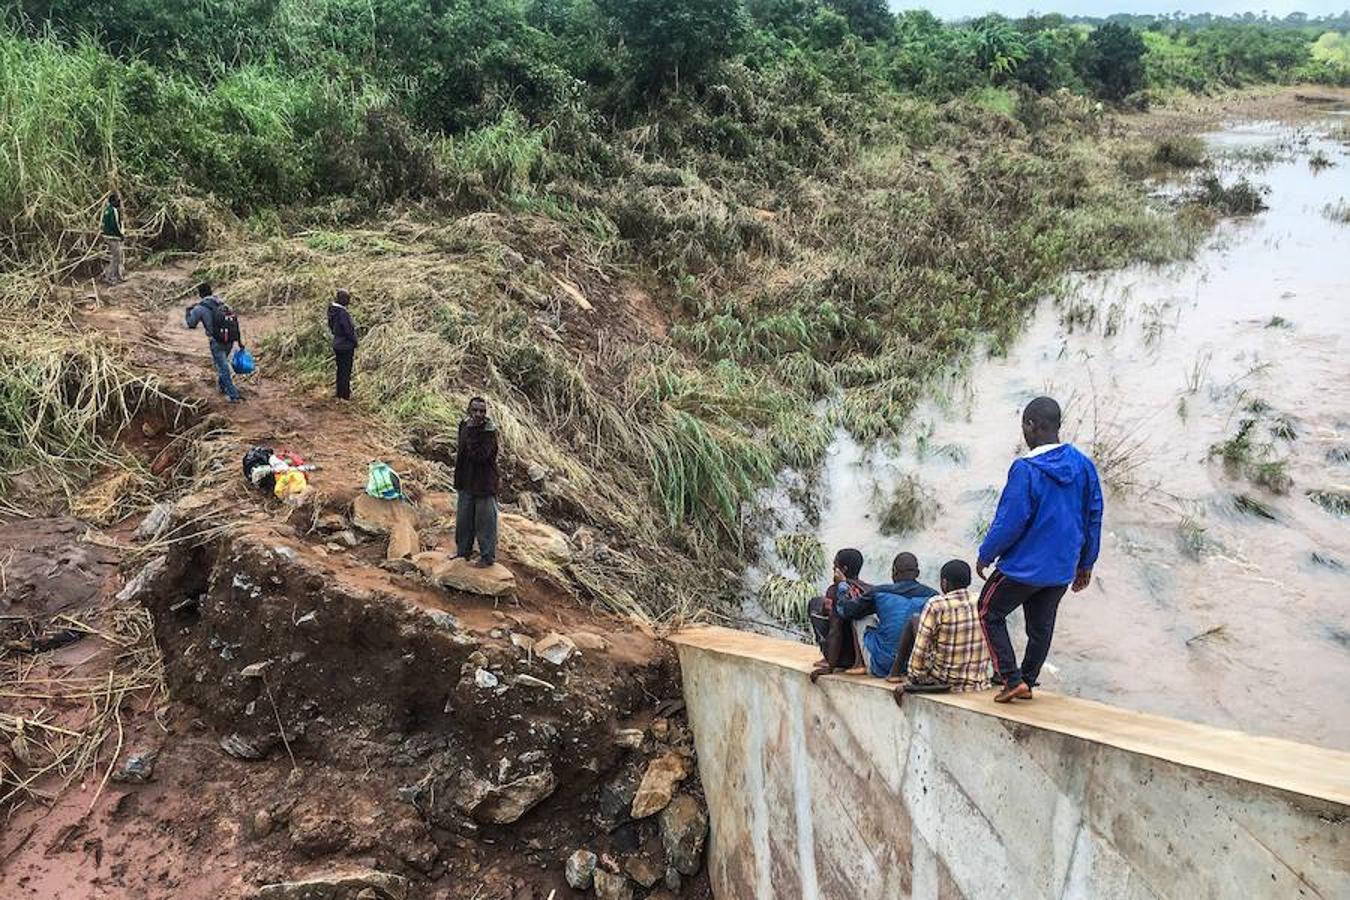 El ciclón Idai, que ha devastado poblaciones enteras a su paso por Mozambique, Malawi y Zimbabue, ha causado al menos 2,8 millones de afectados, según los cálculos que hoy hizo públicos el Programa Mundial de Alimentos (PMA) de las Naciones Unidas.